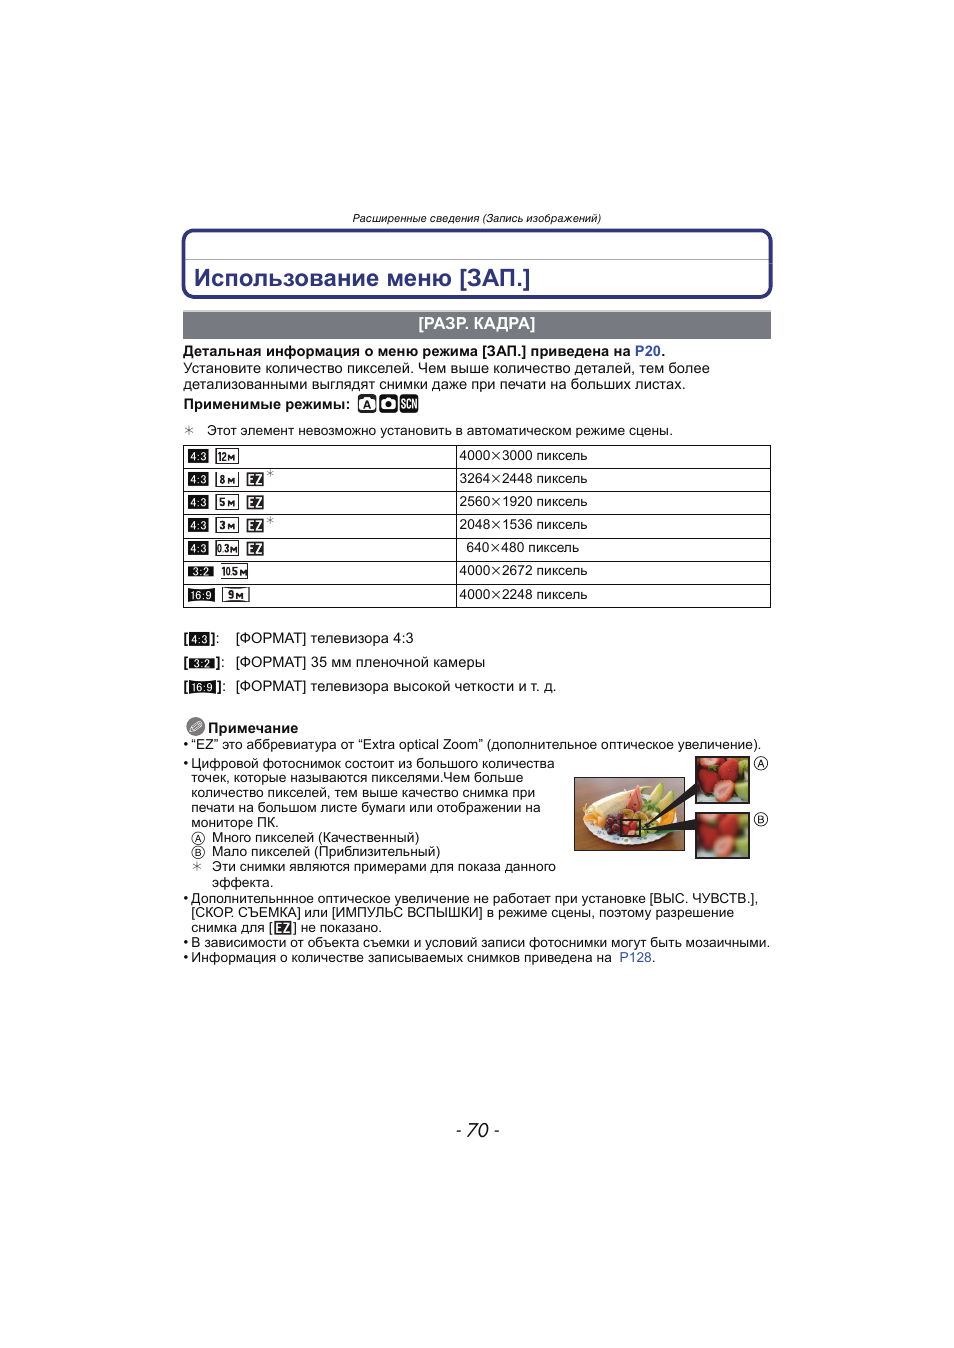 Использование меню [зап, Разр. кадра, P70) | Инструкция по эксплуатации Panasonic KX-MC6020 | Страница 70 / 130